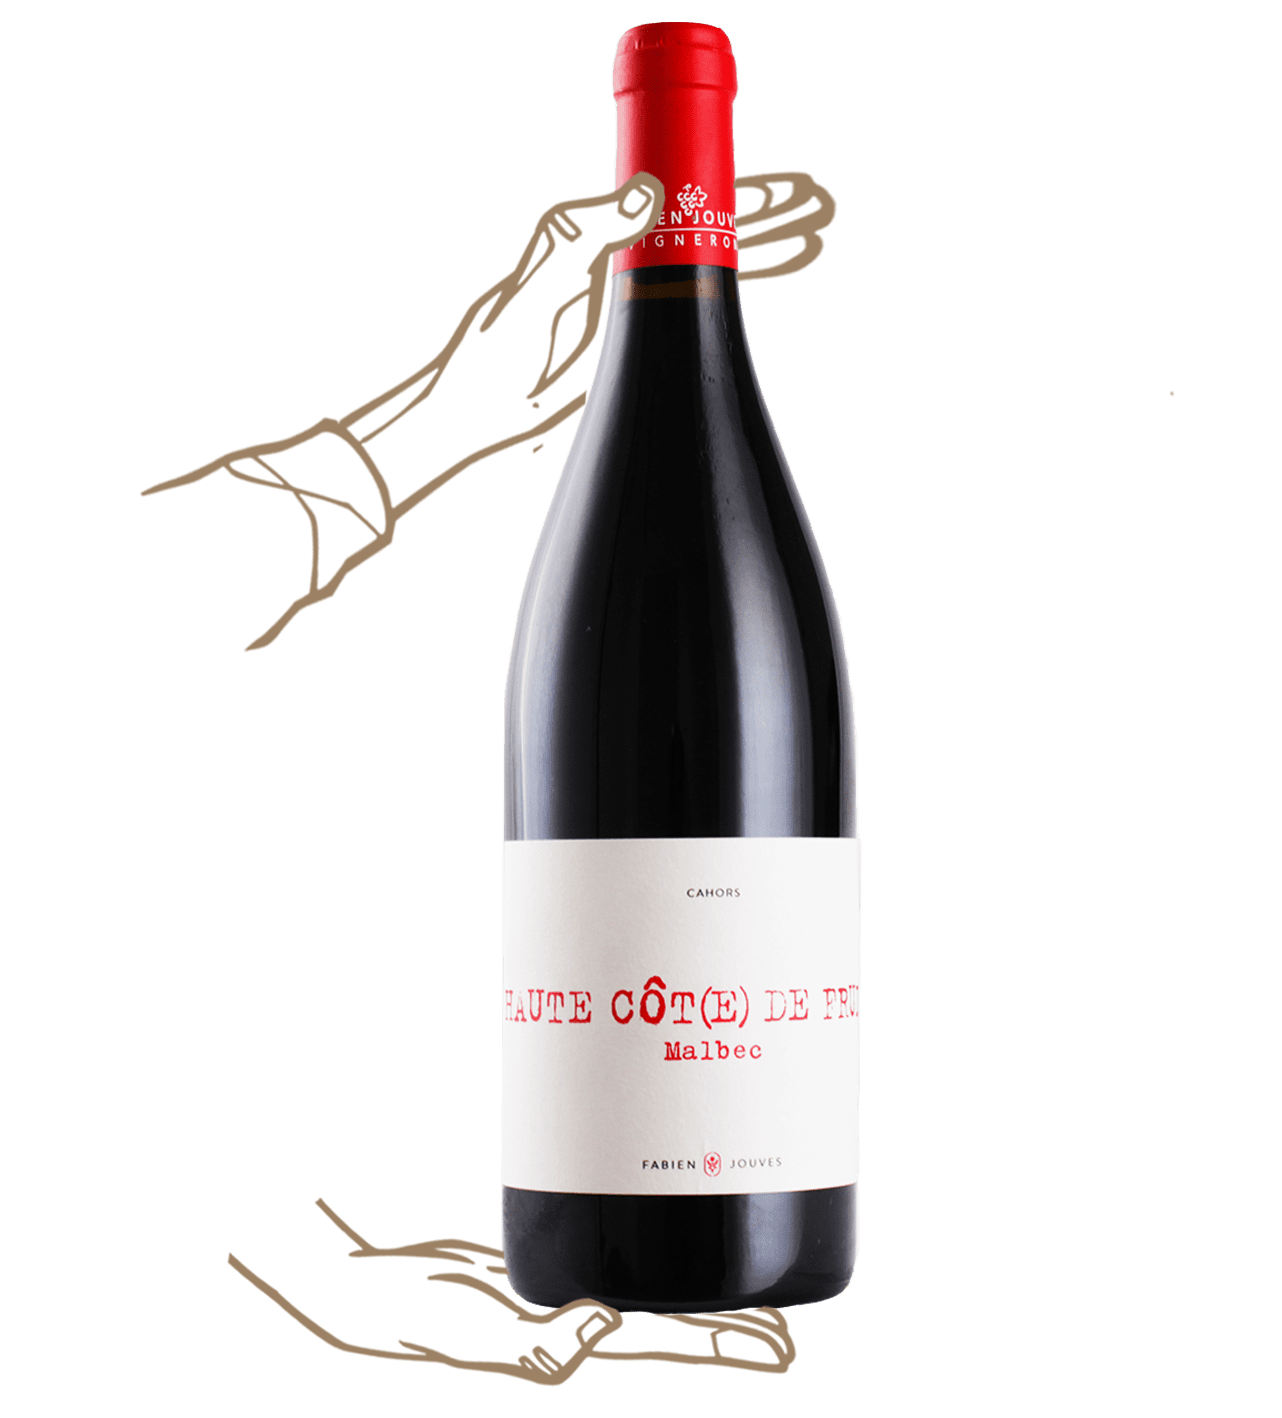 haute côte de fruits is a red natural wine by fabien jouves from domaine mas del pieré